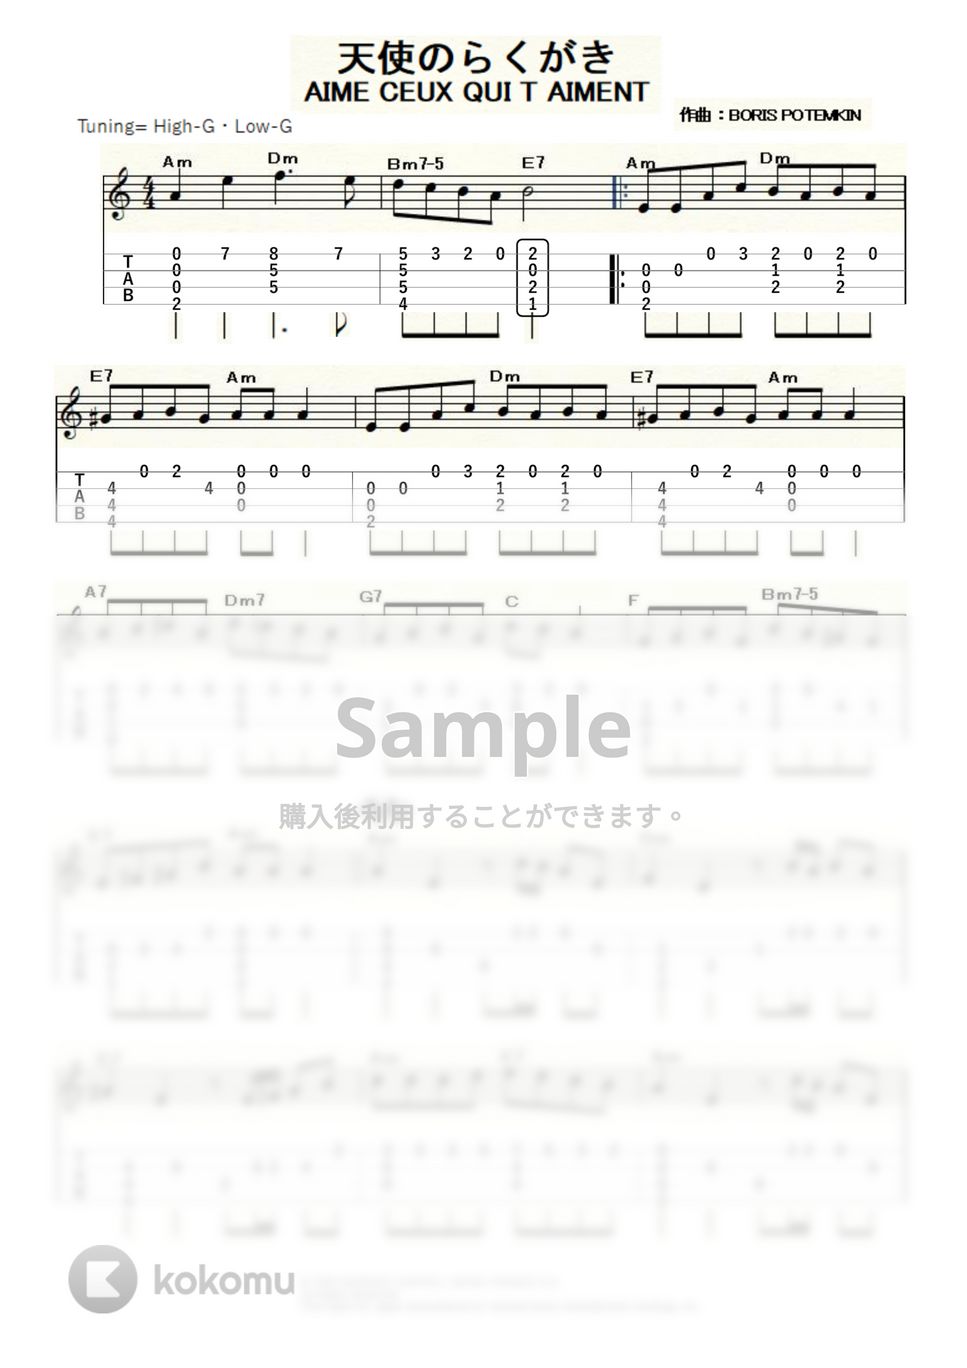 ダニエル・ビダル - 天使のらくがき (ｳｸﾚﾚｿﾛ / High-G・Low-G / 初級～中級) by ukulelepapa